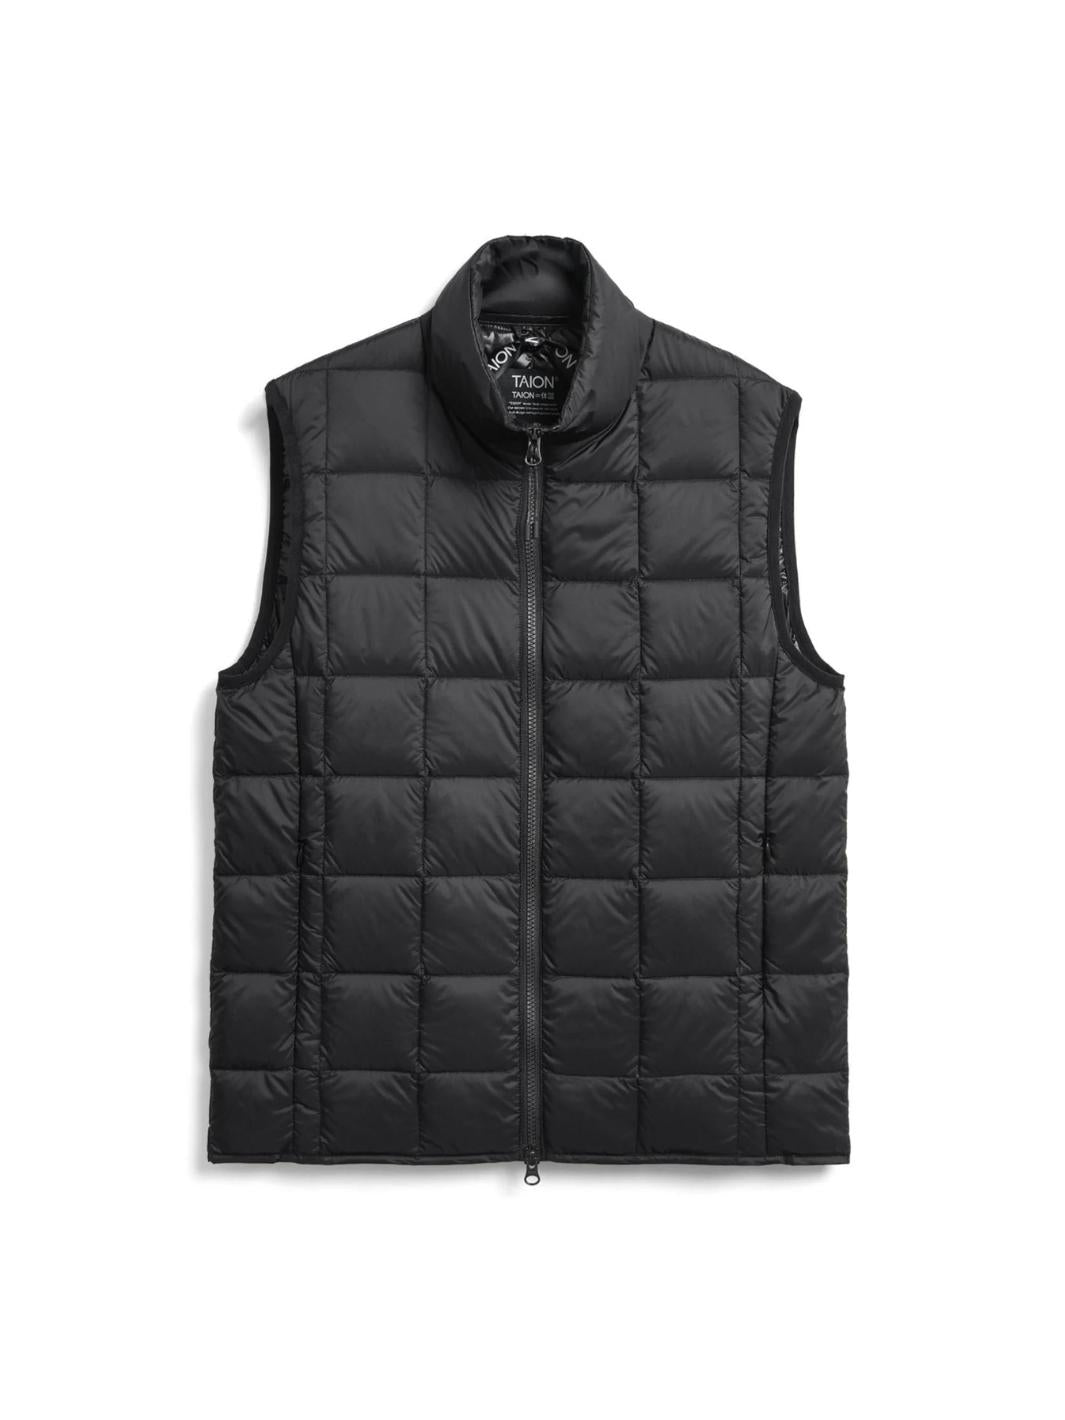 Taion Outerwear Dunvest | Hi-Neck Down Vest Black